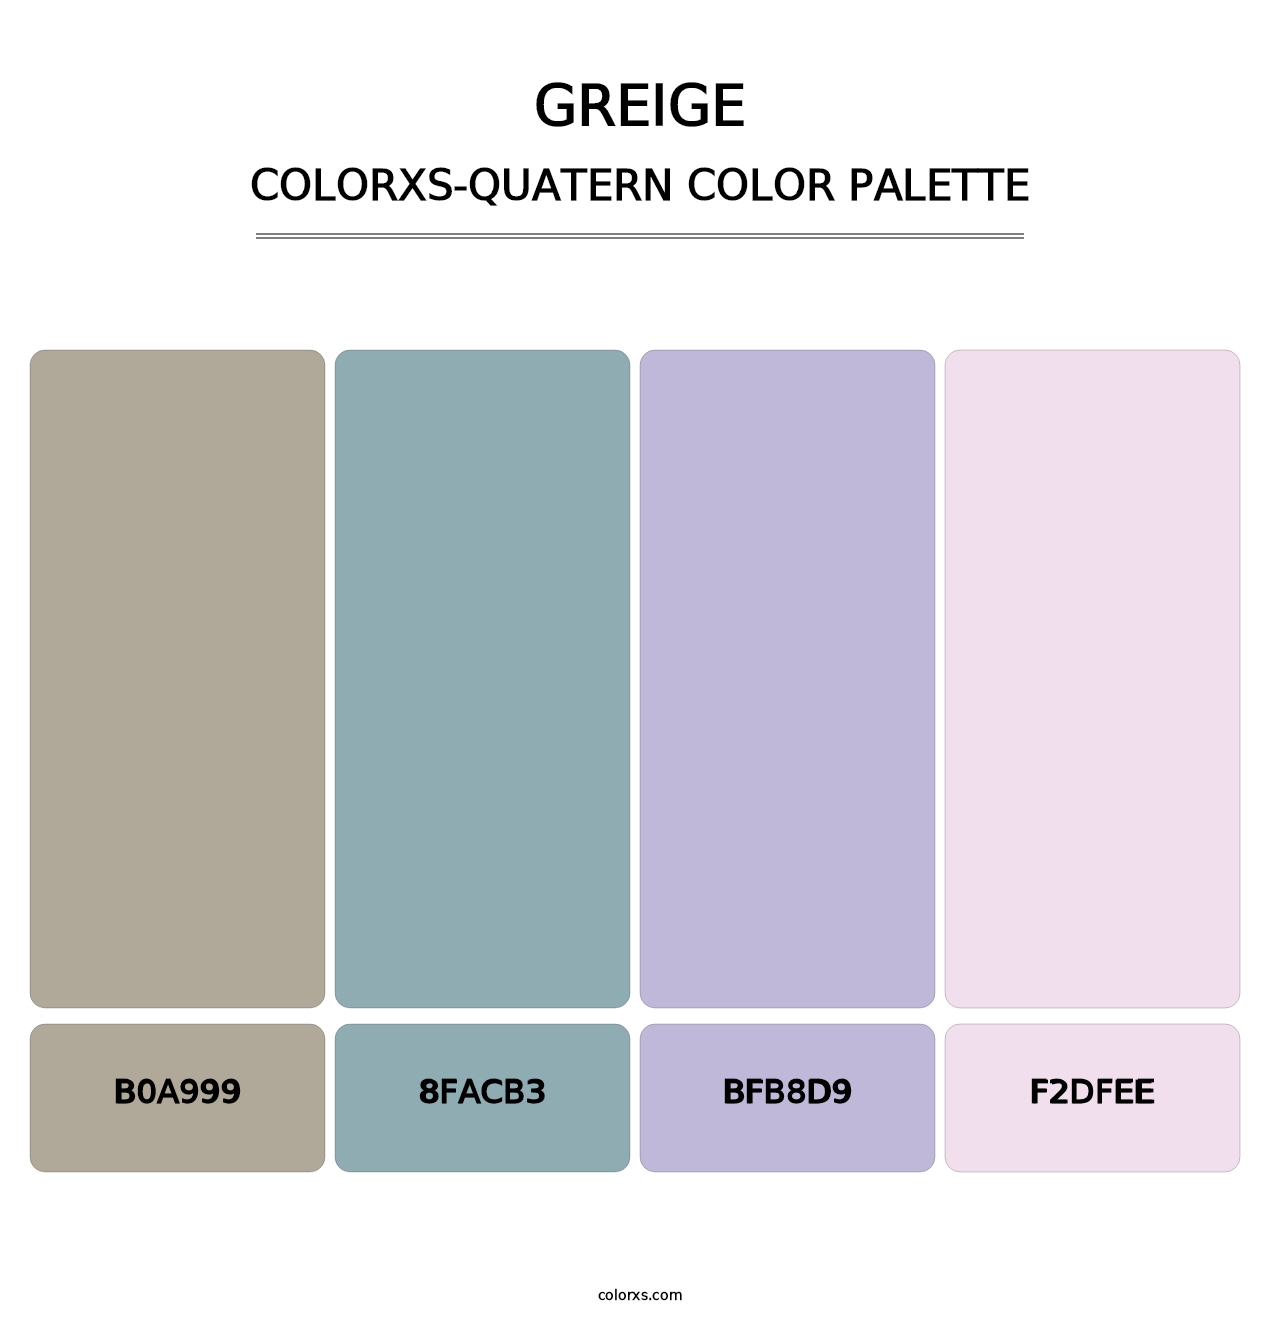 Greige - Colorxs Quatern Palette